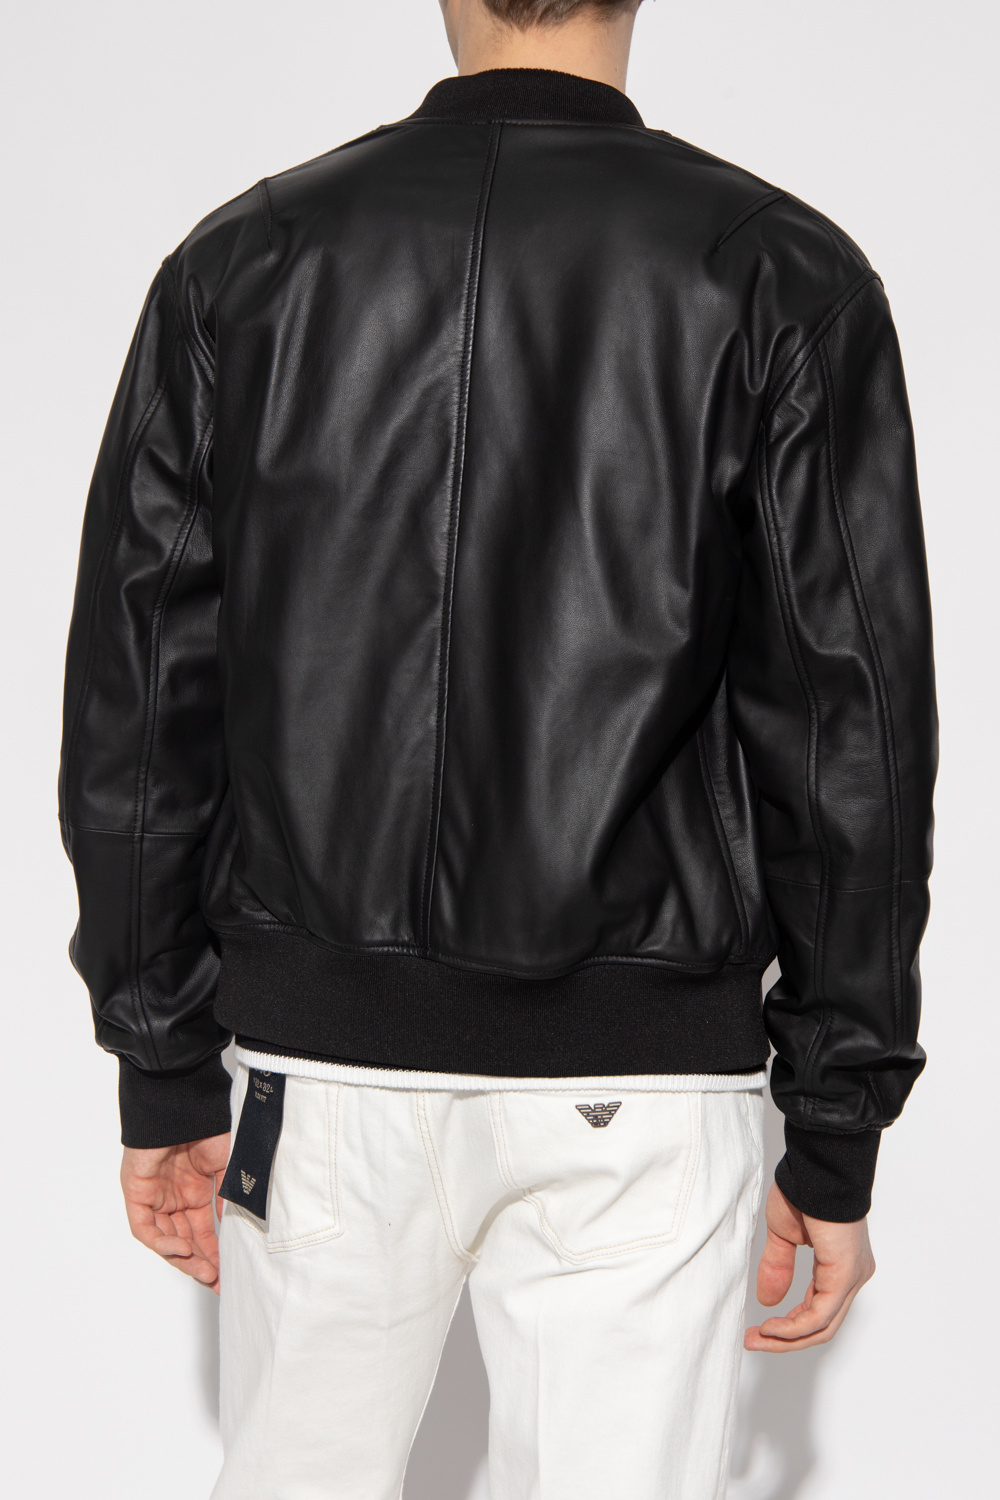 Leather jacket Emporio Armani - Vitkac France